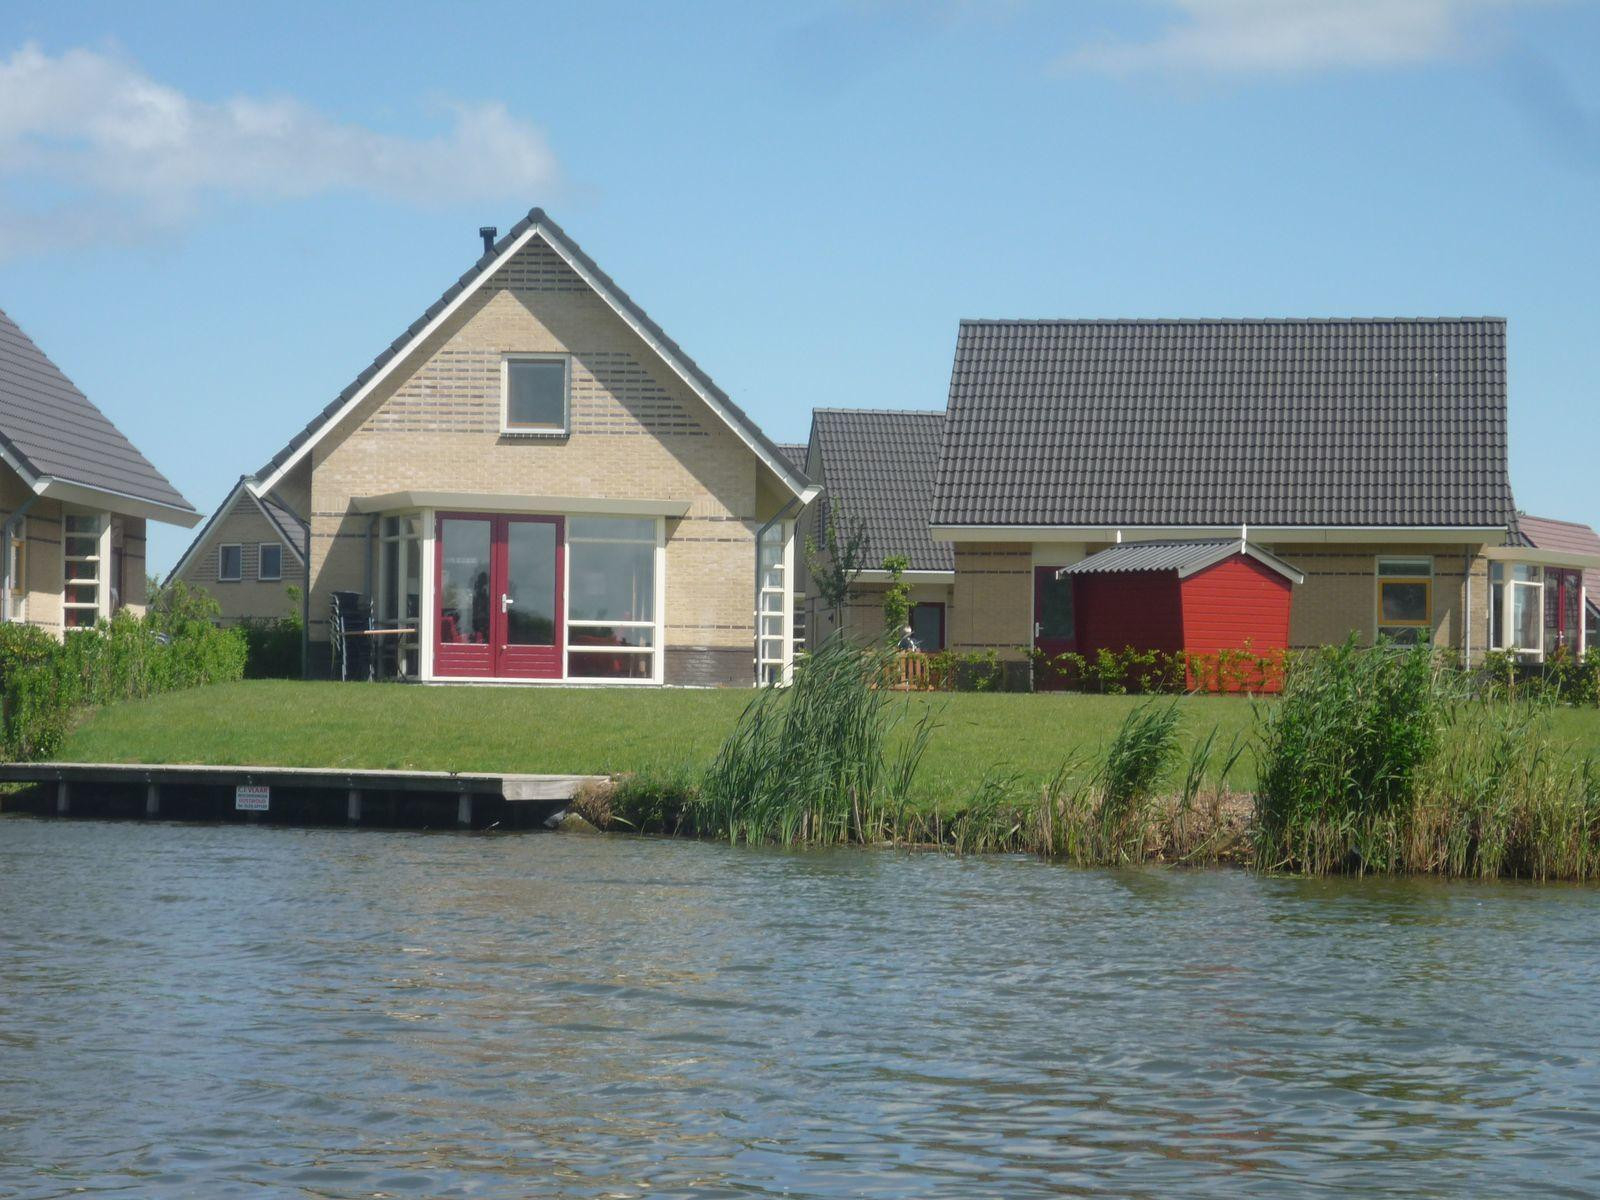 Luxe 4 persoons vakantiehuis aan het water in Medemblik, nabij het IJsselmeer - Nederland - Europa - Medemblik